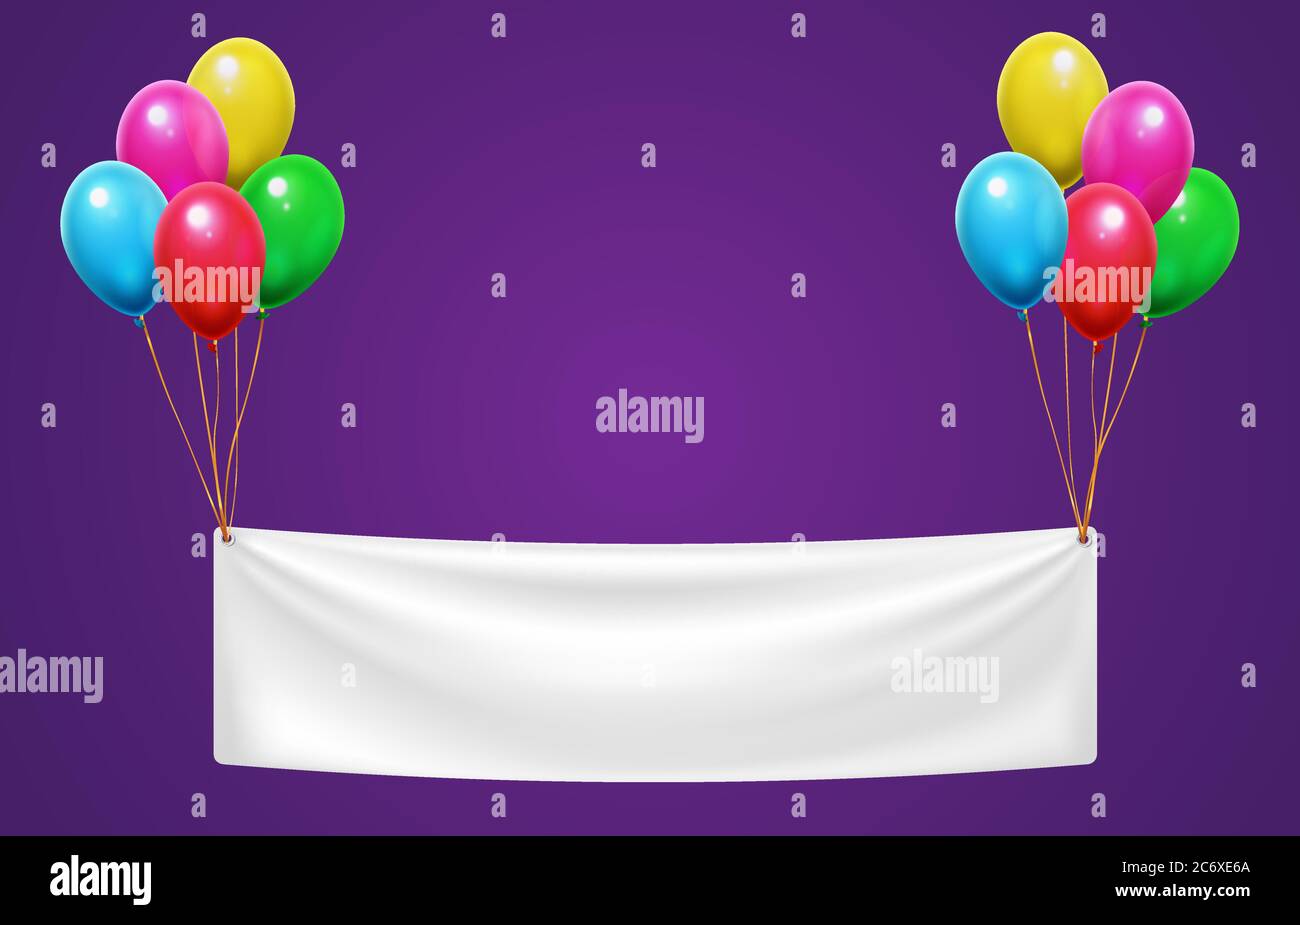 Banner hängt auf bunten Luftballons für Happy Birthday Party. Einladung zur Veranstaltung oder Grußkarte Stock Vektor